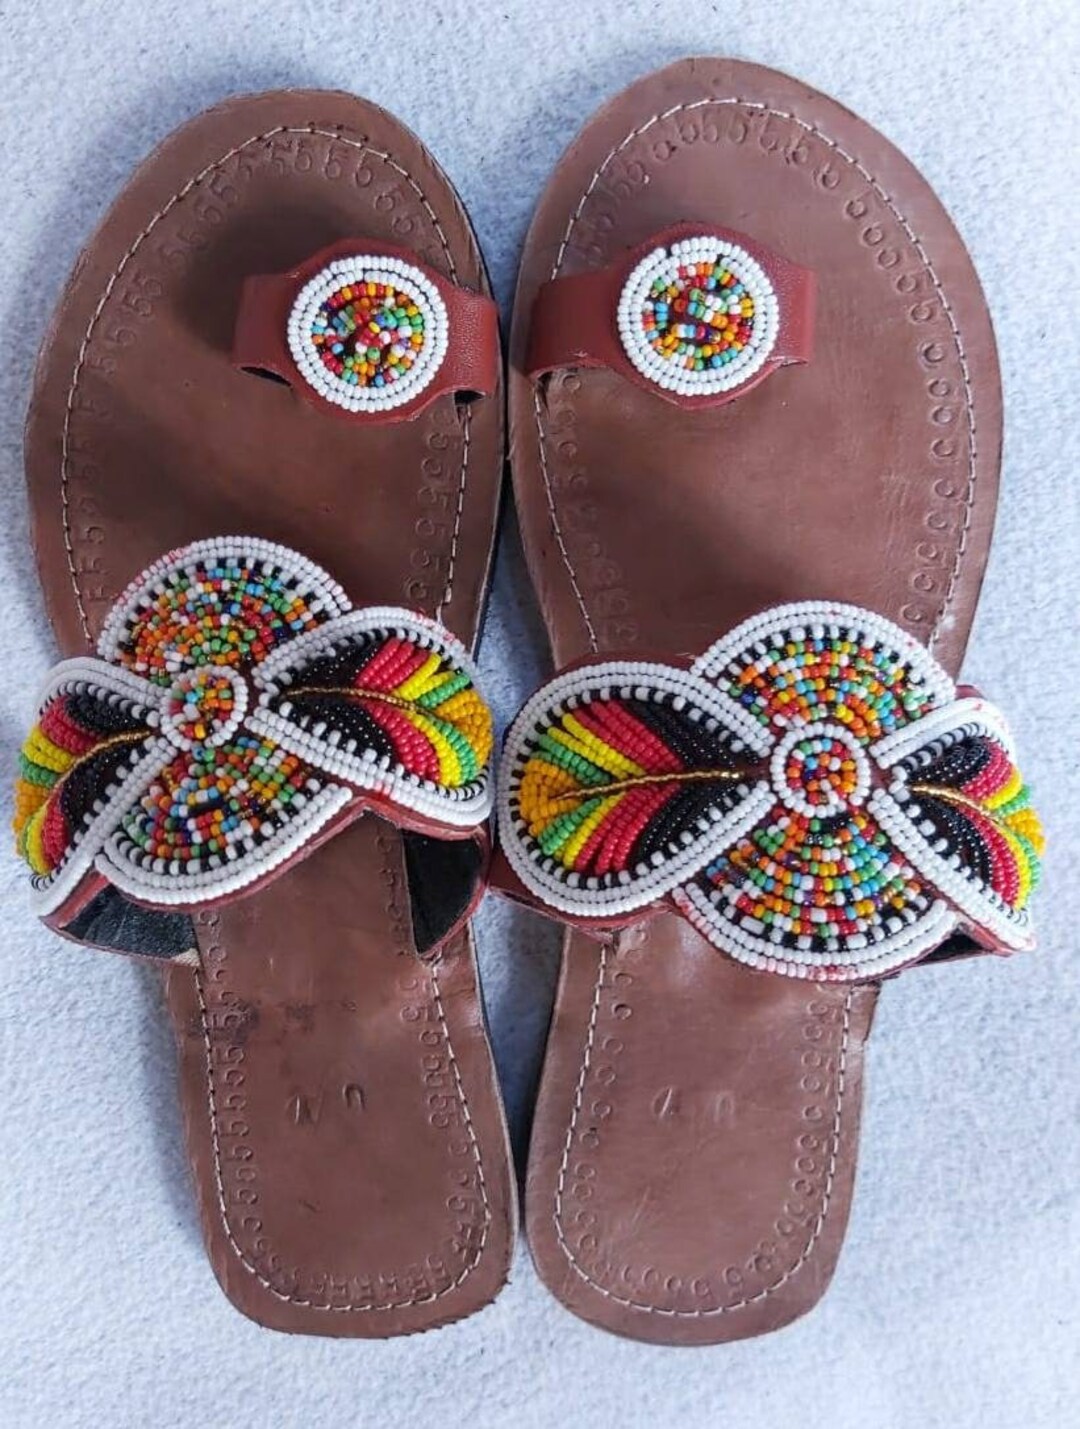 ON Salemaasai Beaded Sandal Sandals for Women Women's - Etsy